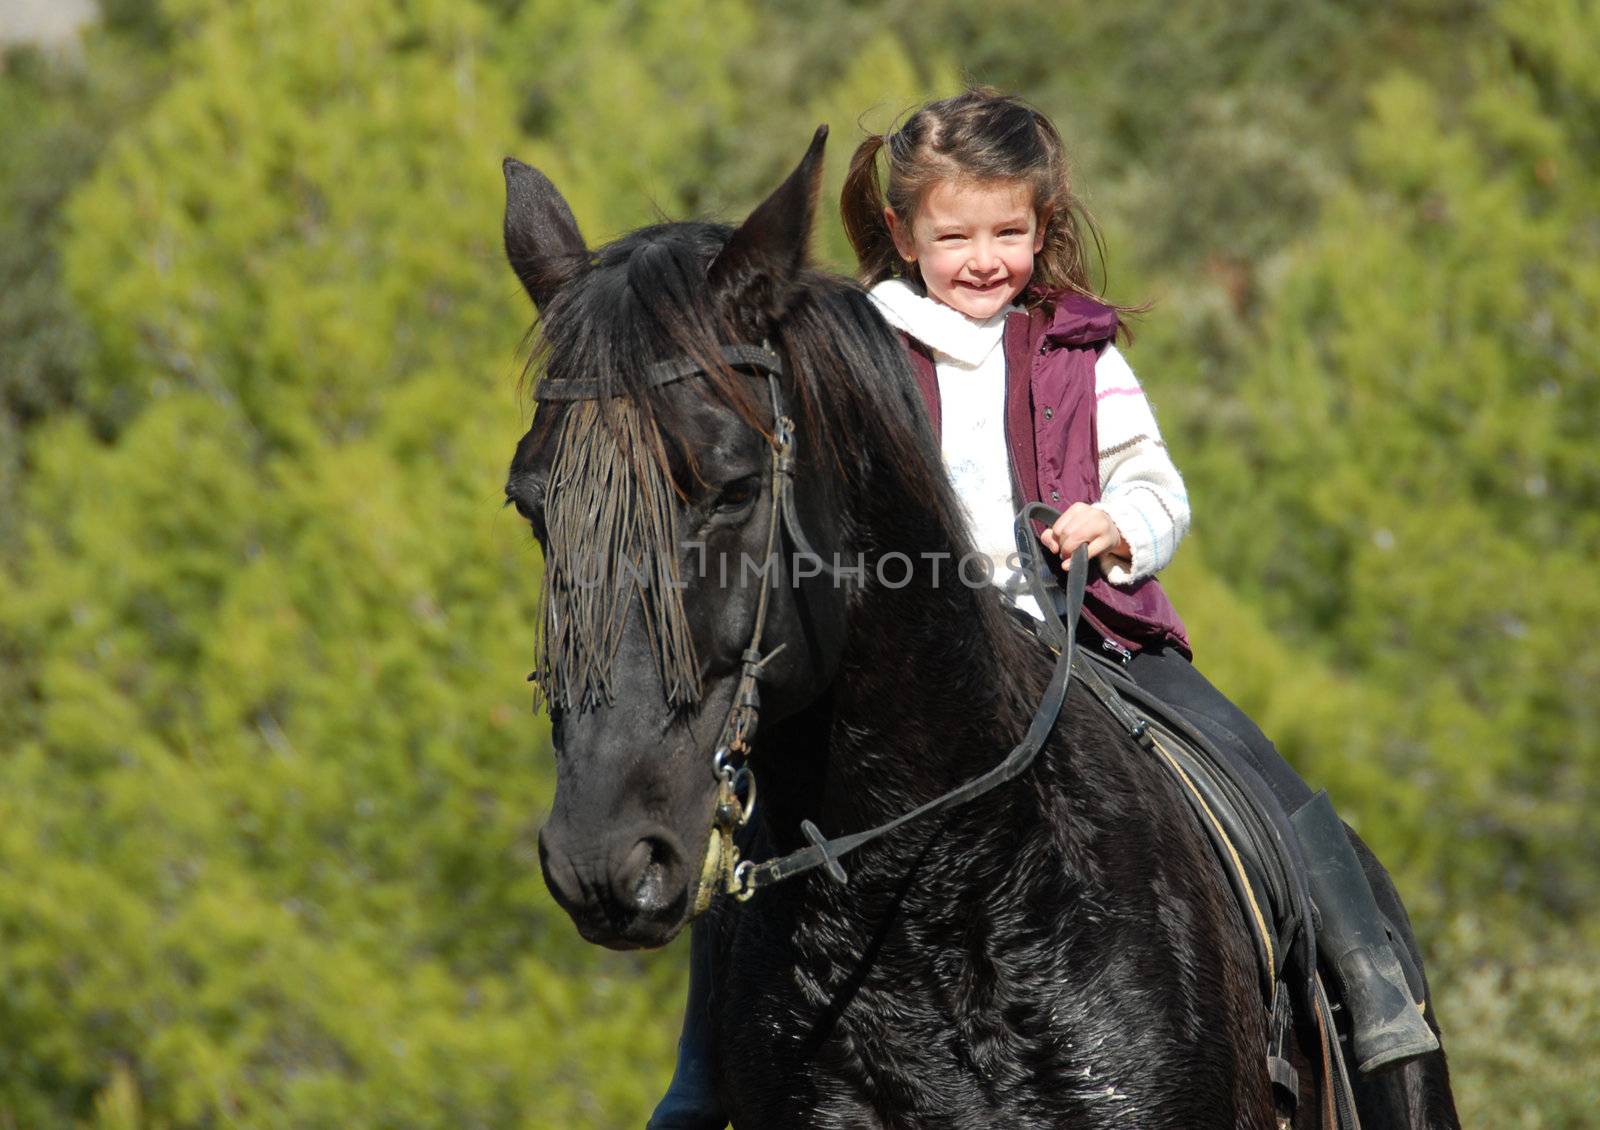 little smiling girl on her black stallion. focus on the child